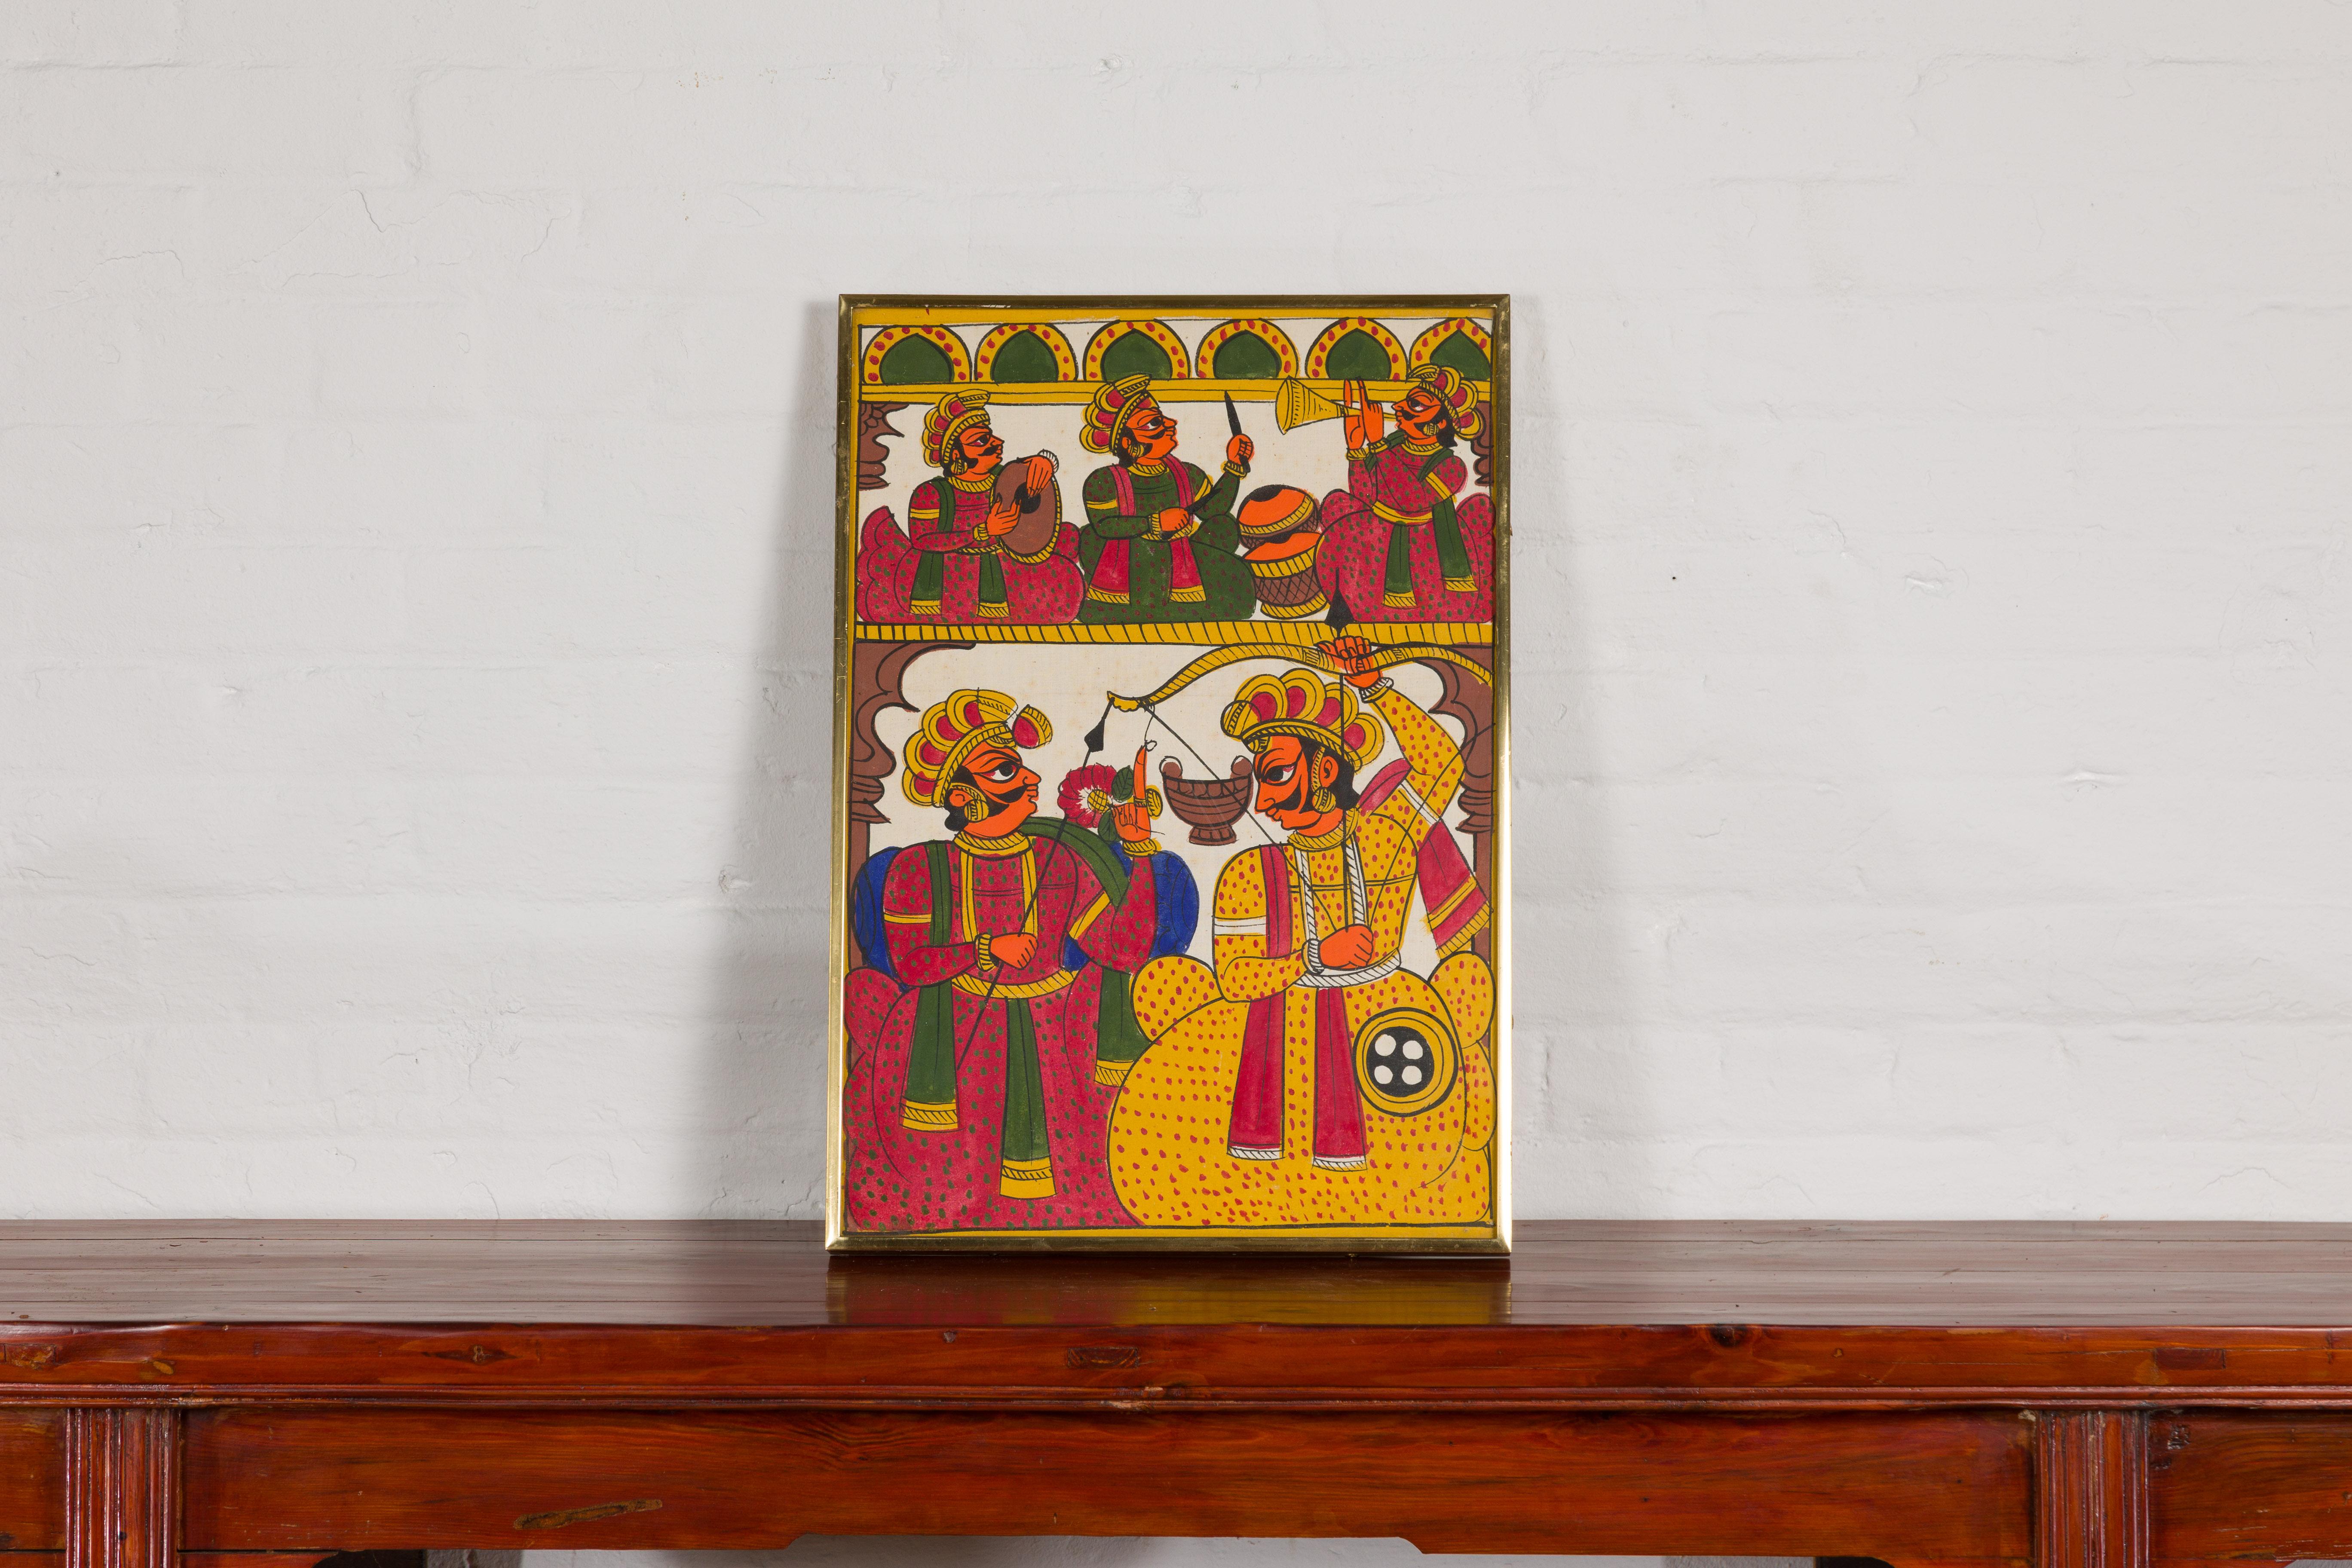 Peinture folklorique indienne ancienne peinte à la main représentant des musiciens et des archers dans un cadre en laiton personnalisé. Entrez dans un monde vibrant de rythme et de tir à l'arc avec cette peinture folklorique indienne ancienne peinte